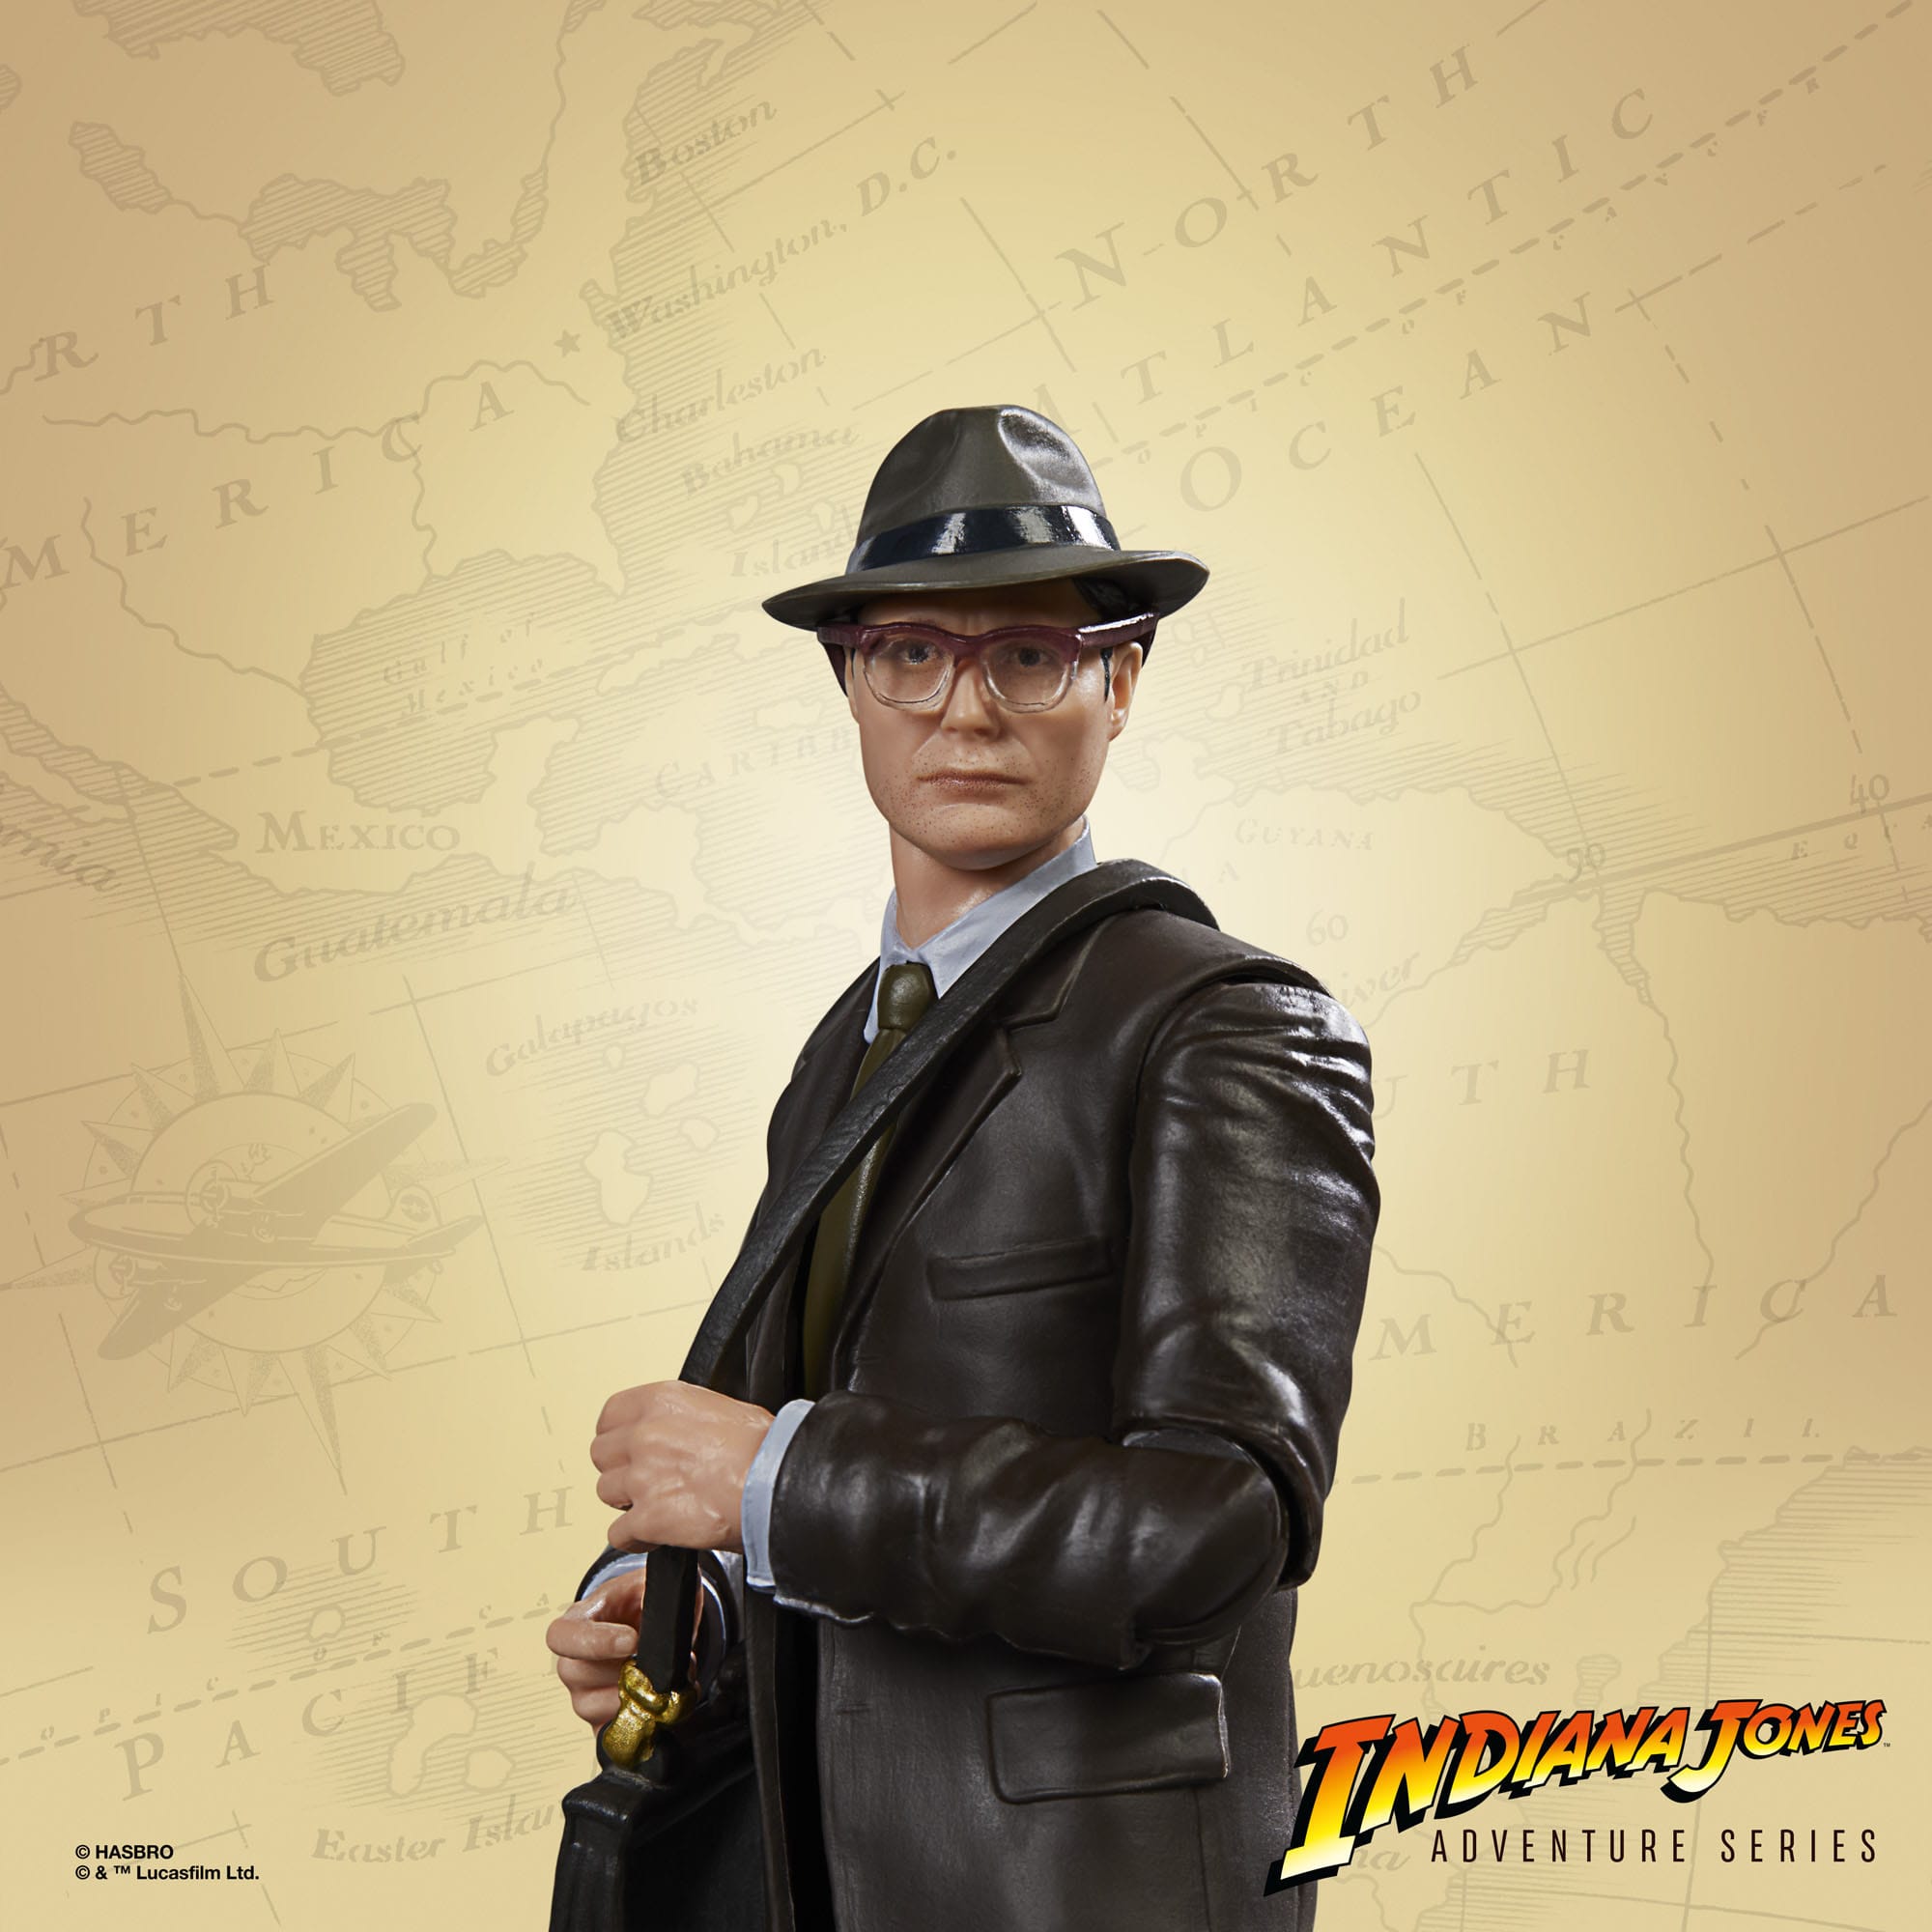  Indiana Jones Adventure Series Actionfigur Dr. Jürgen Voller (Das Rad des Schicksals) 15 cm  F60745X0 5010994168001